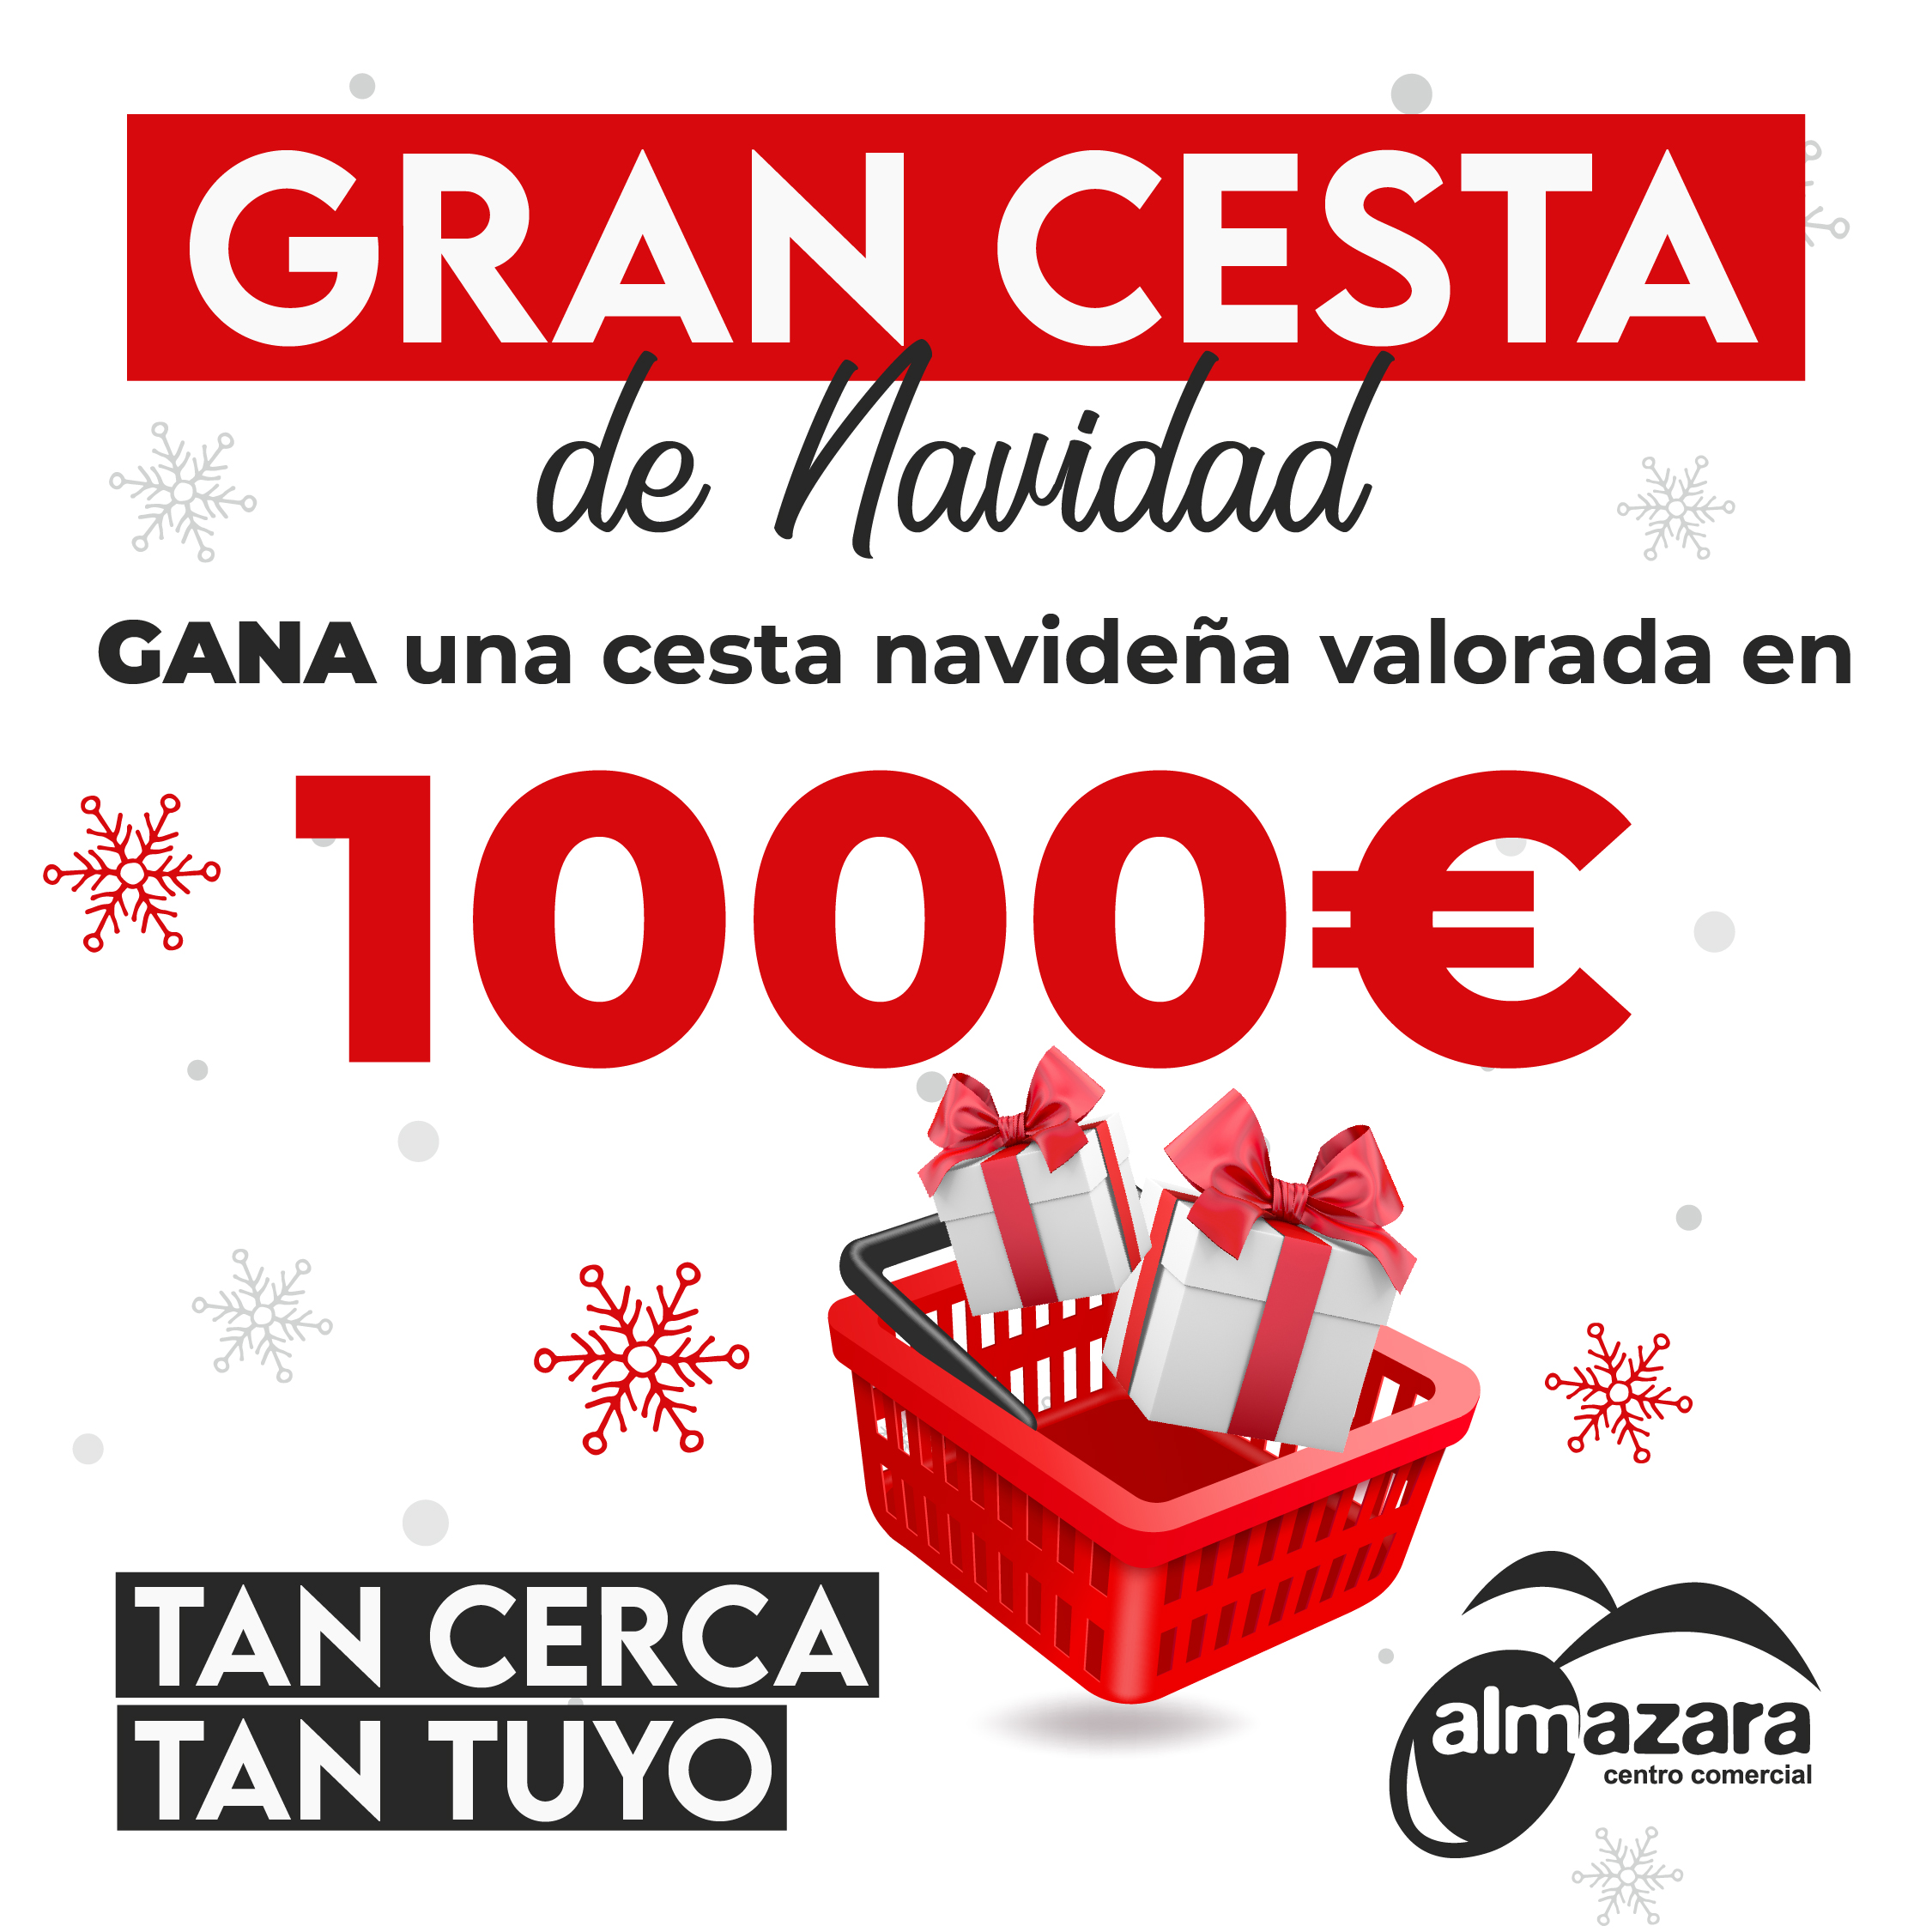 GANA 1000€: ¡La Gran Cesta de Navidad!